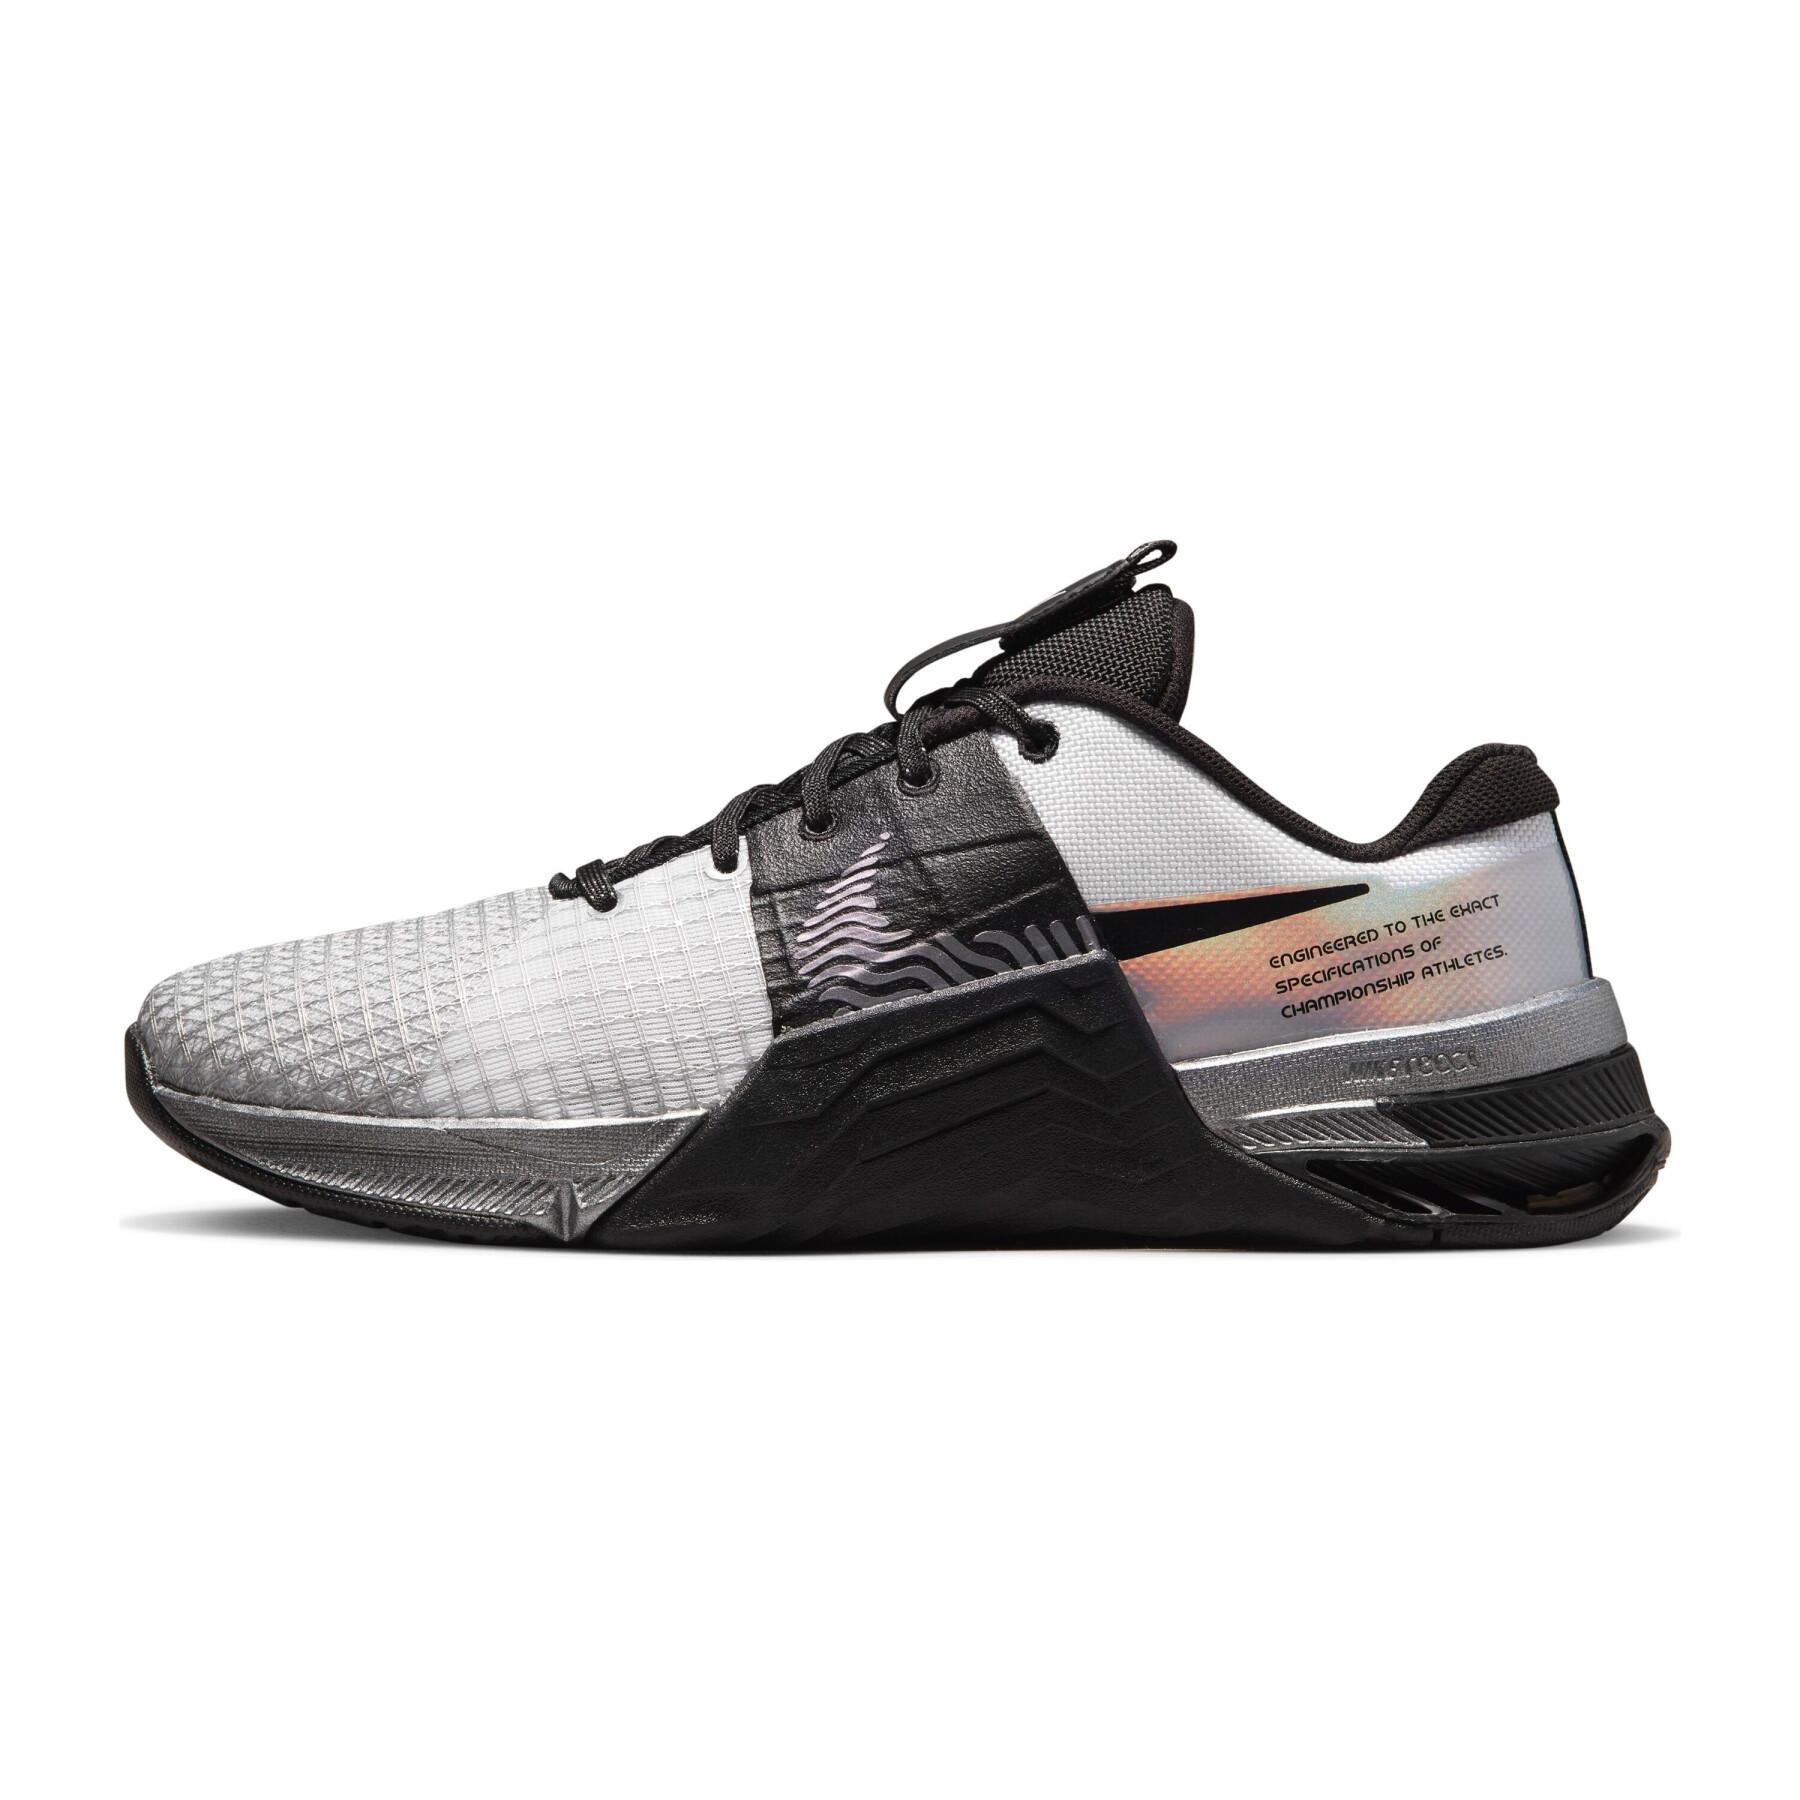 Zapatillas de cross-training para mujer Nike Metcon 8 Premium